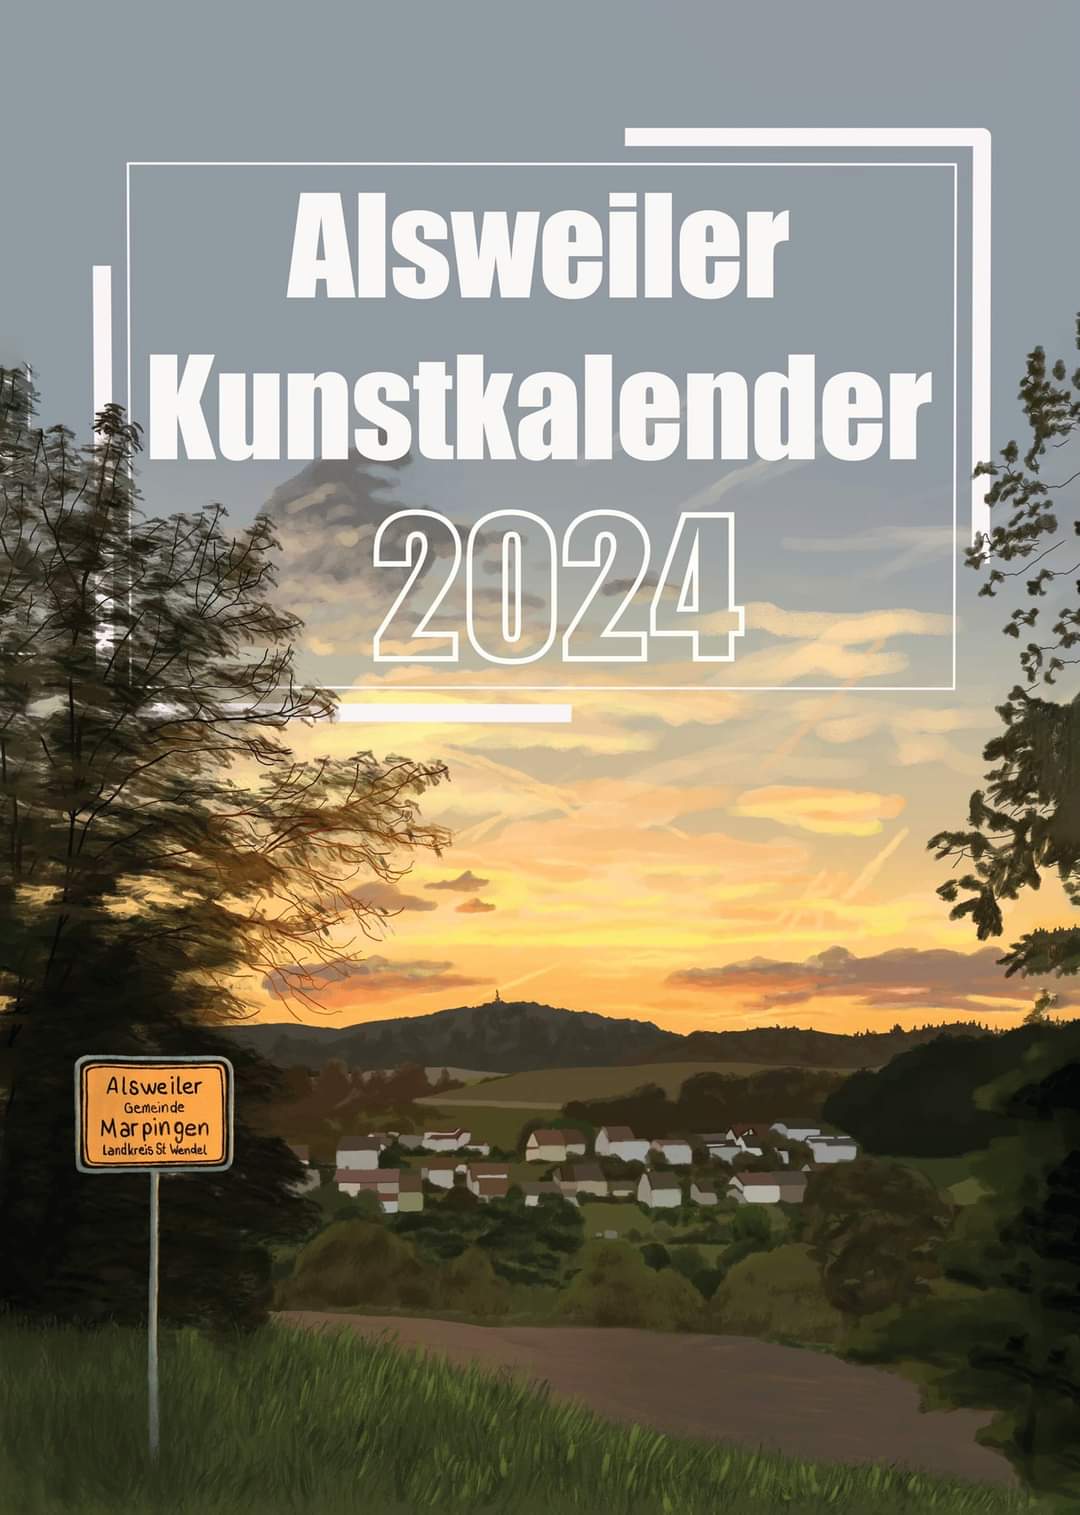 You are currently viewing Alsweiler Kunstkalender 2024 ab jetzt verfügbar!